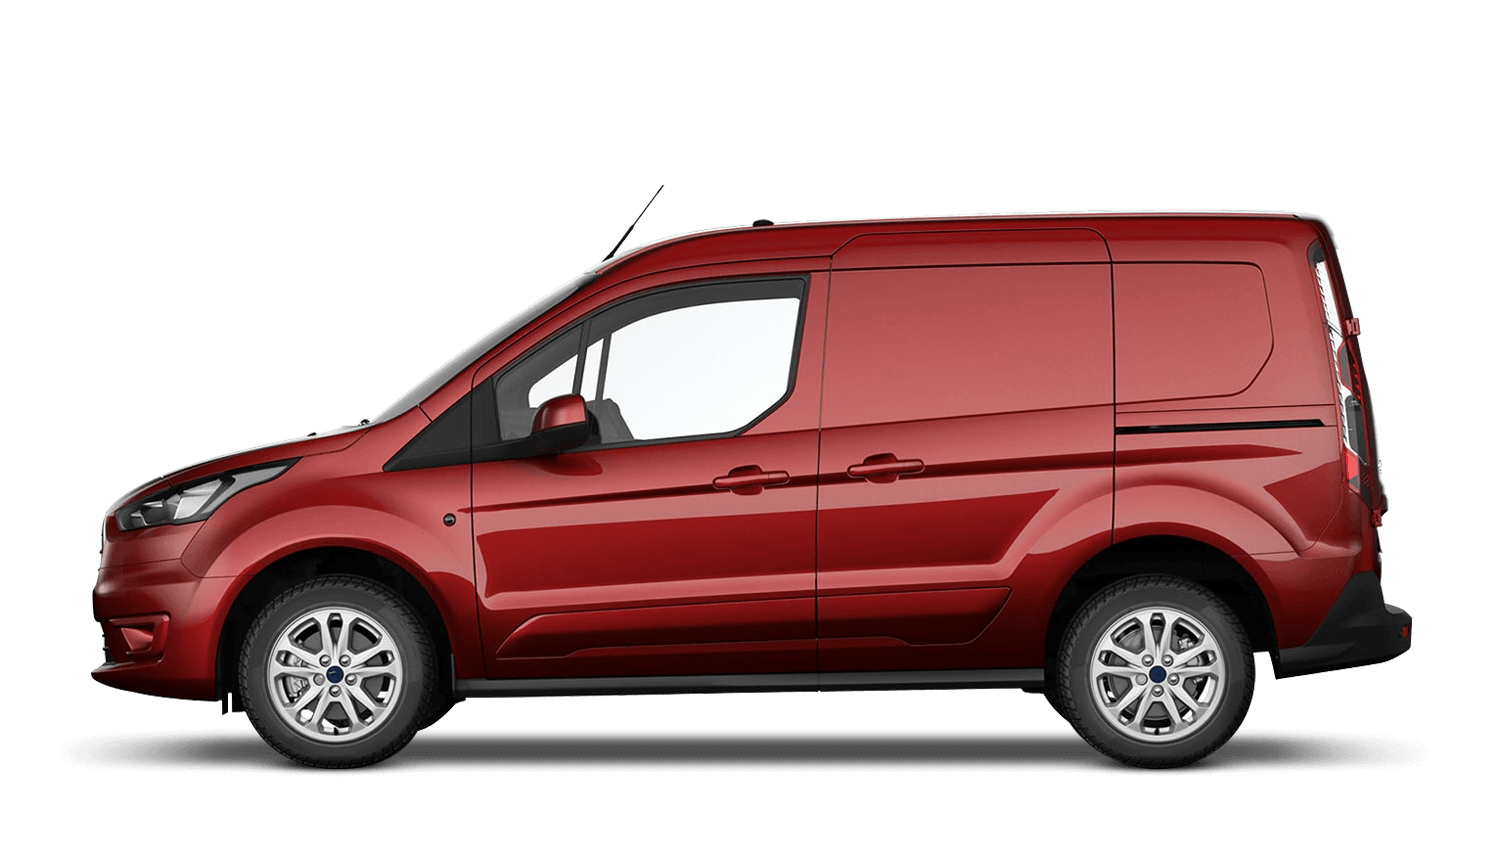 new ford van deals